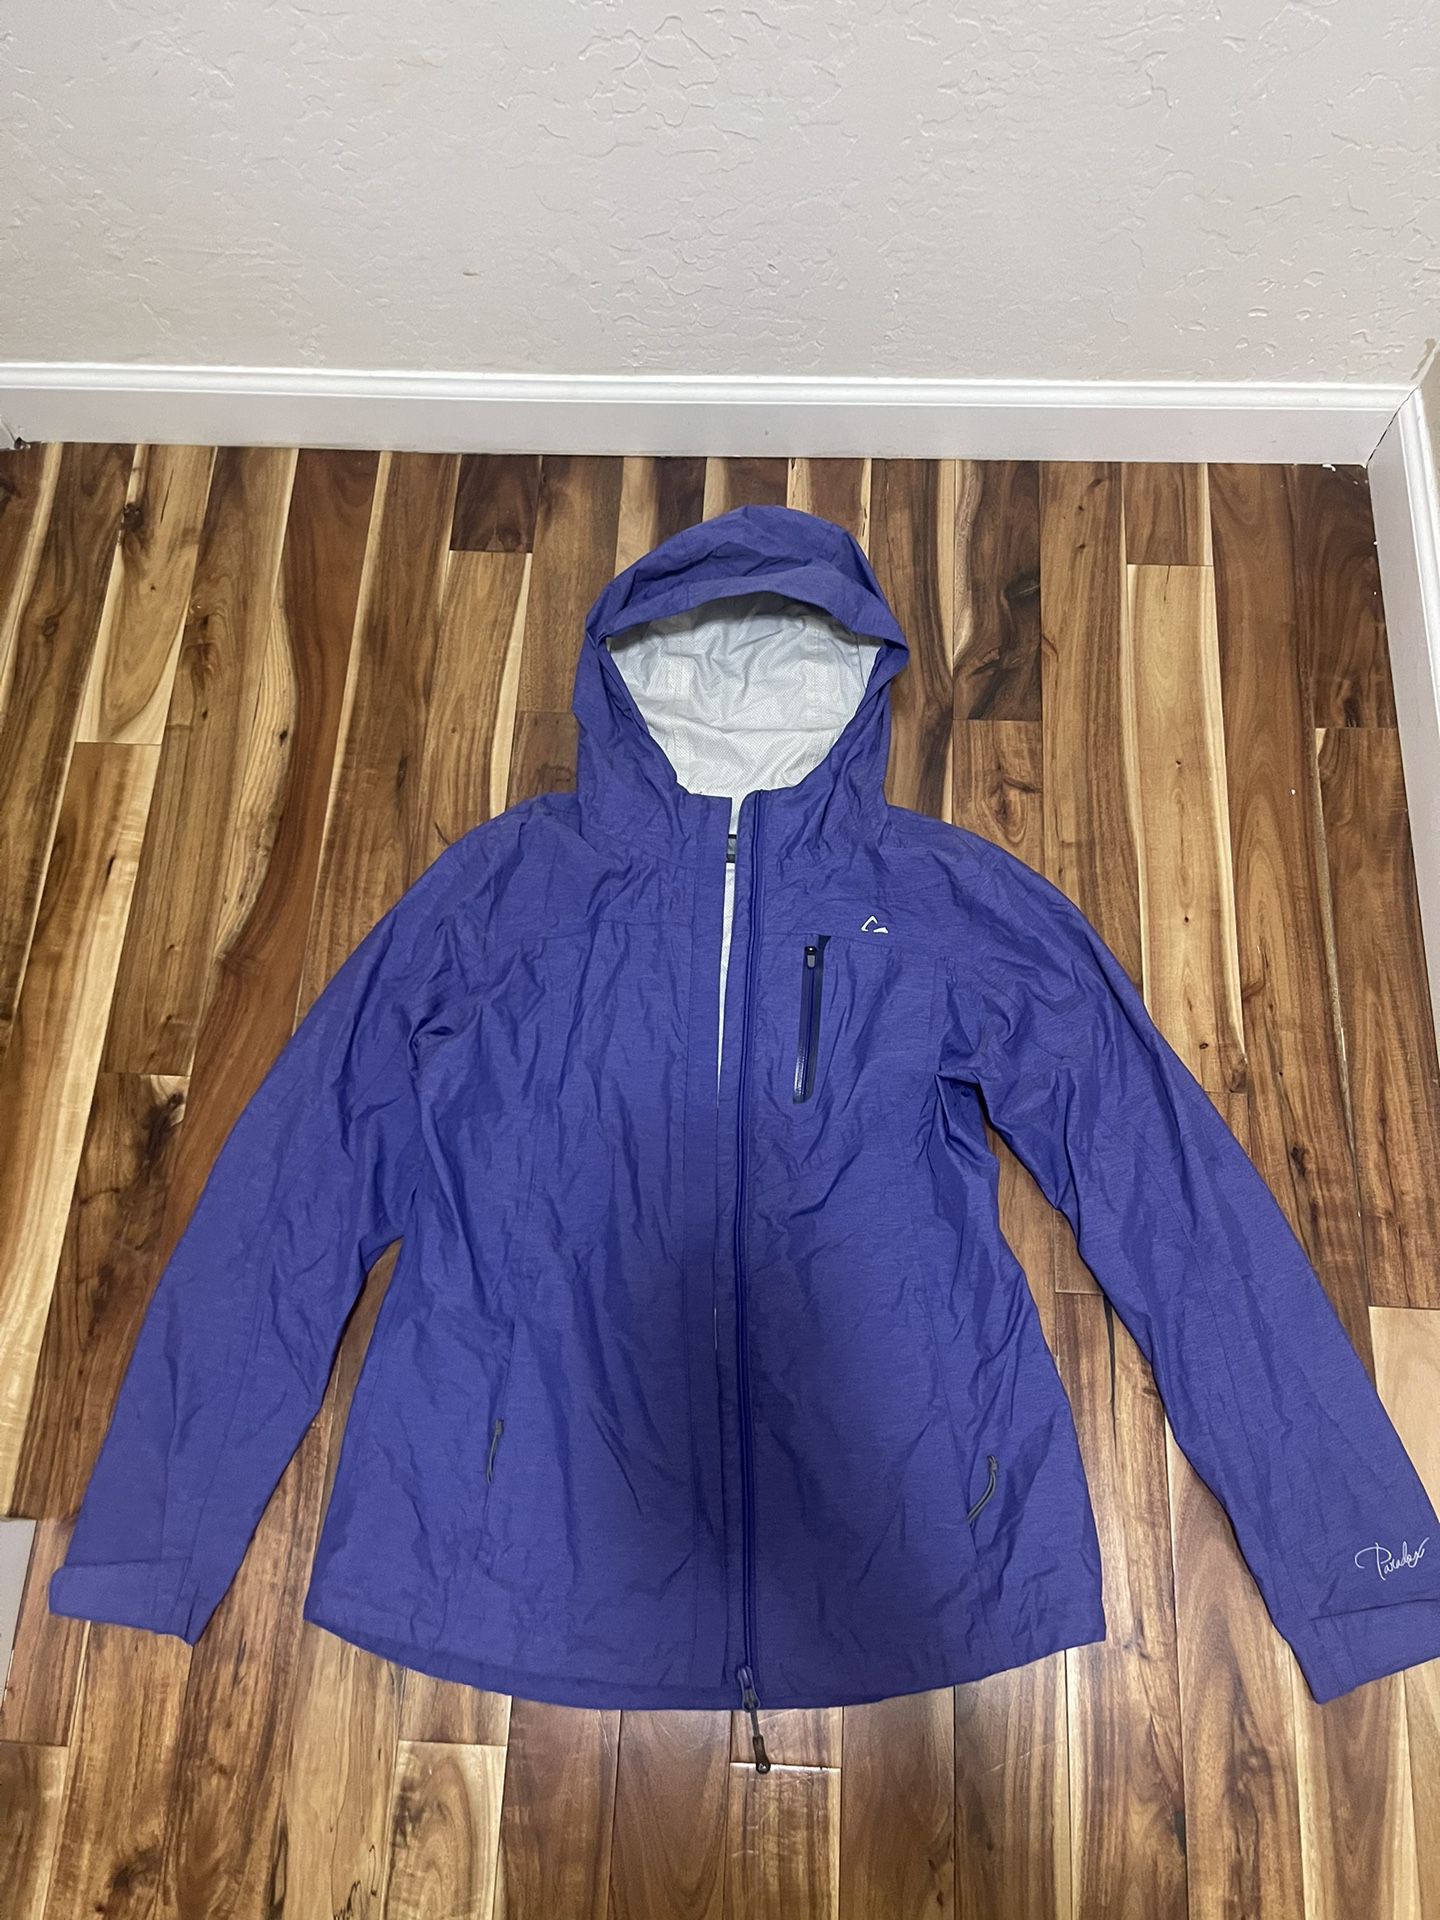 Paradox Women’s Rain Jacket Size Small 